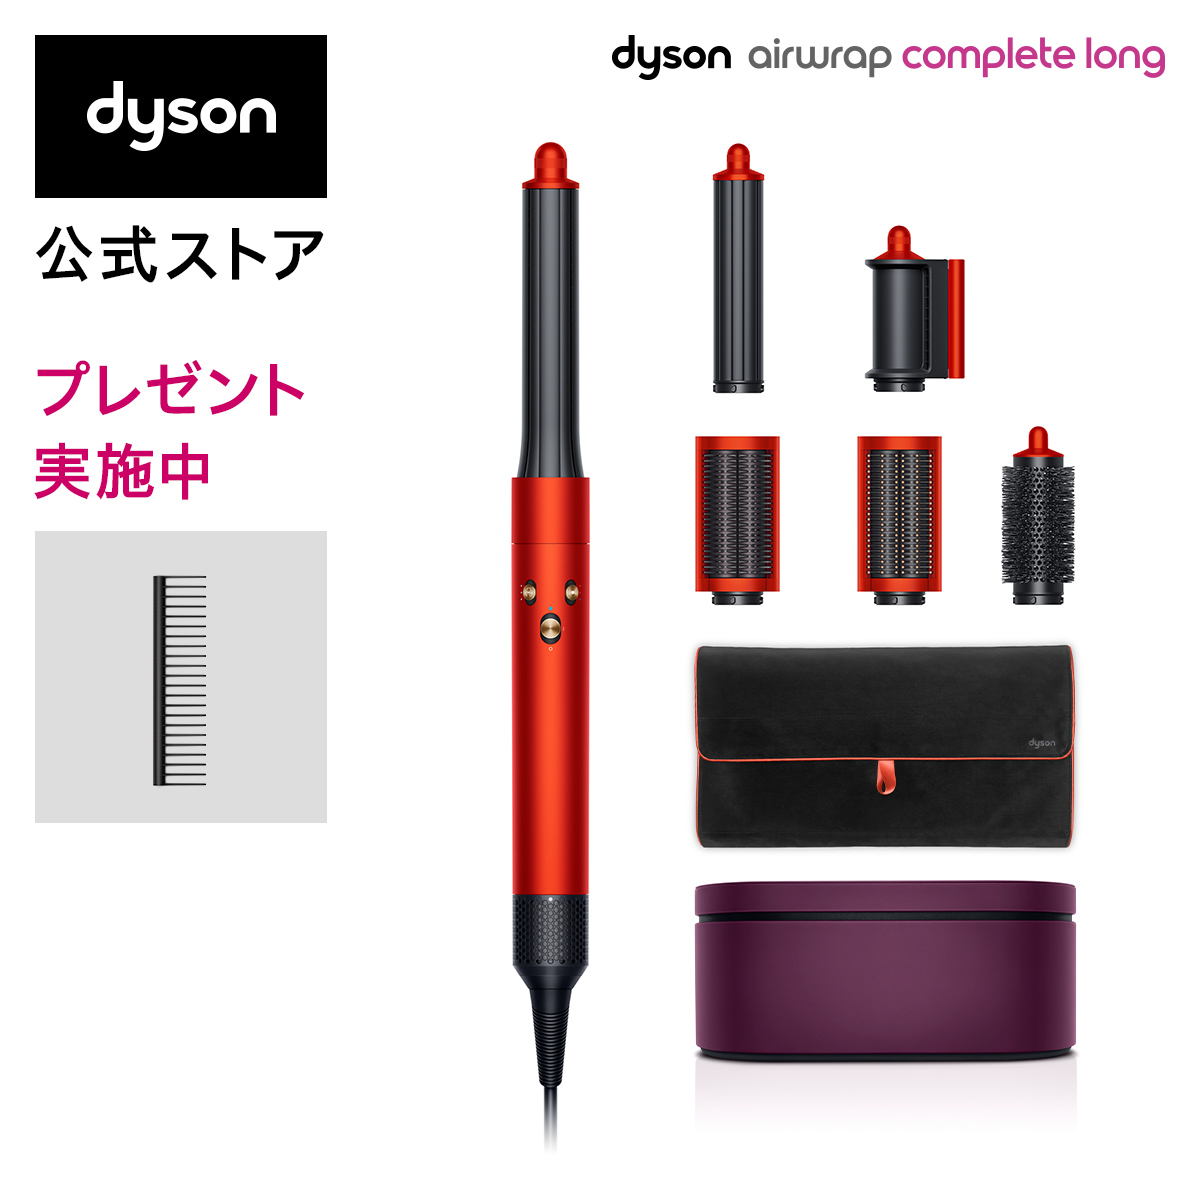 激安特価品 ダイソン Dyson Airwrap Complete Long HS05 COMP LG TOTO